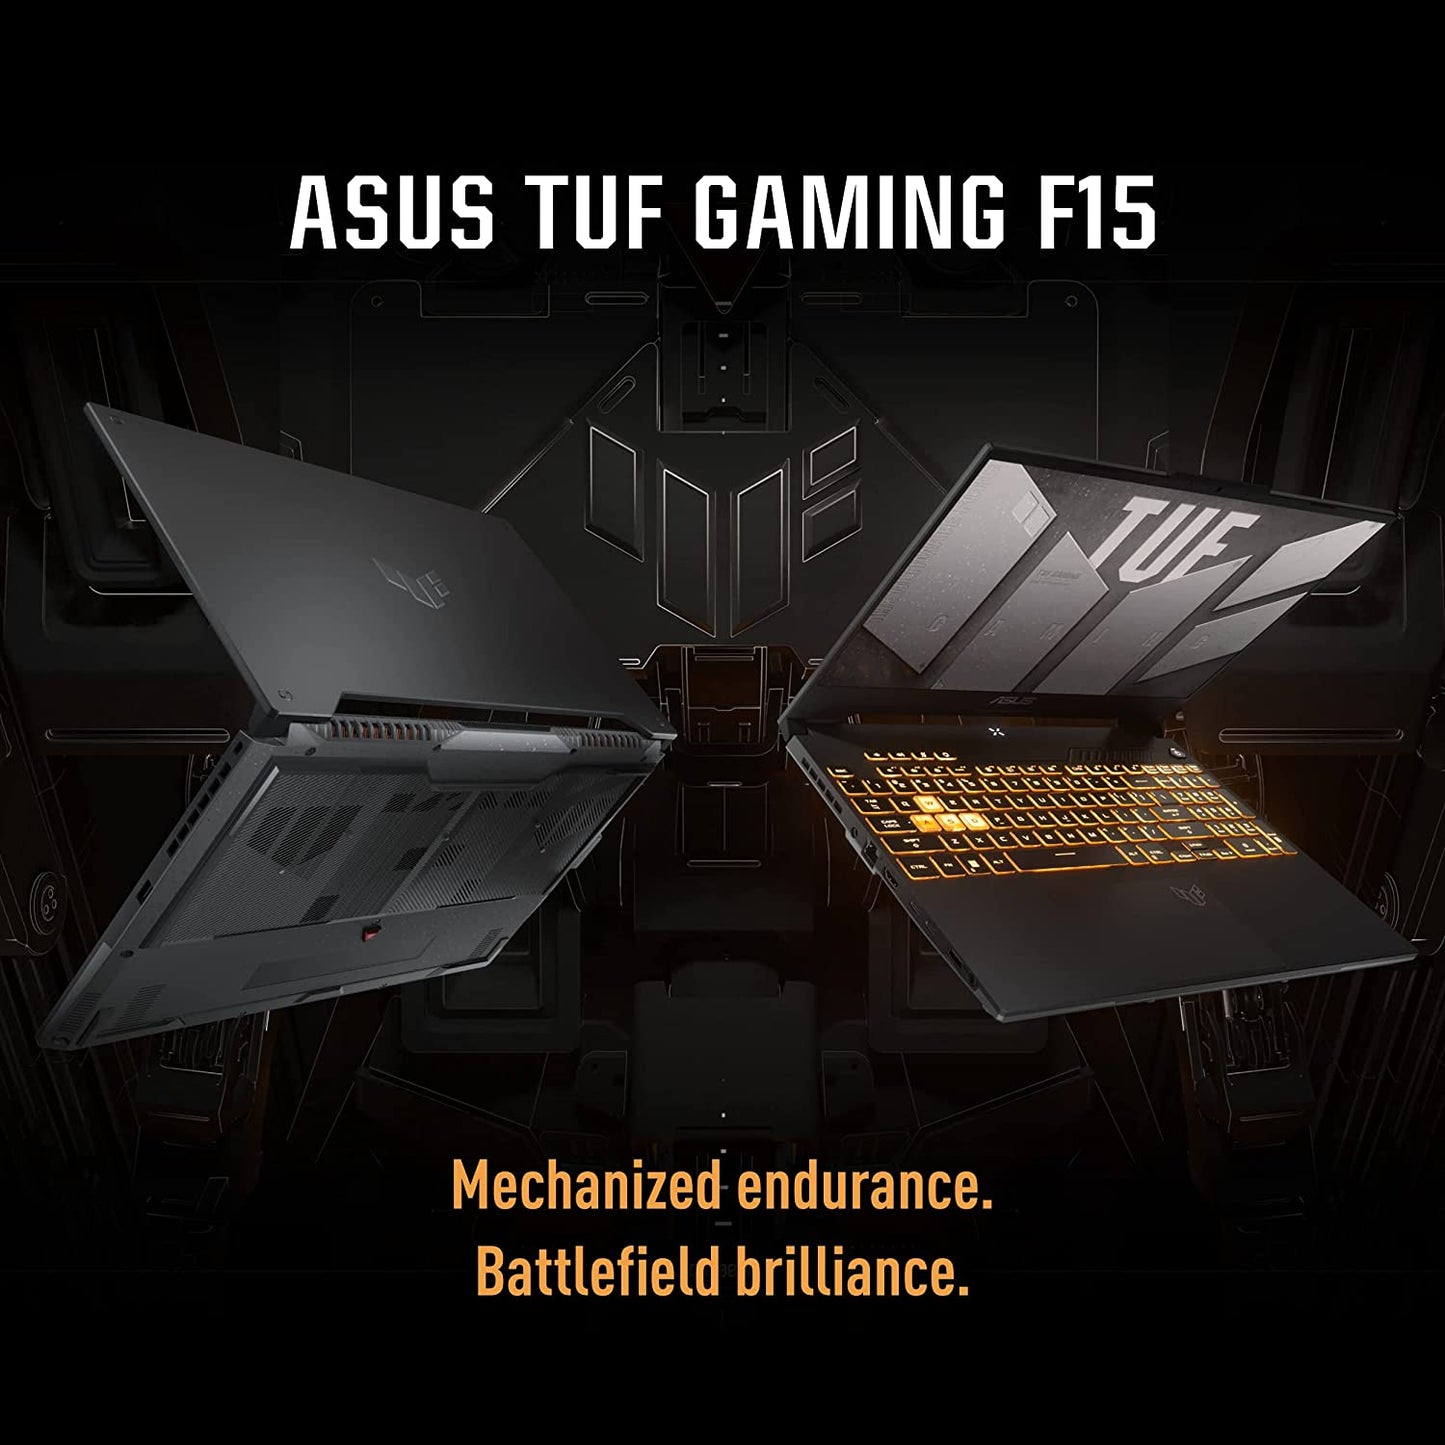 ASUS TUF F15 - Laptop para juegos, pantalla IPS FHD de 15.6 pulgadas, procesador Intel Core i5-10300H, GeForce GTX 1650, 8GB DDR4 RAM, 512GB PCIe SSD